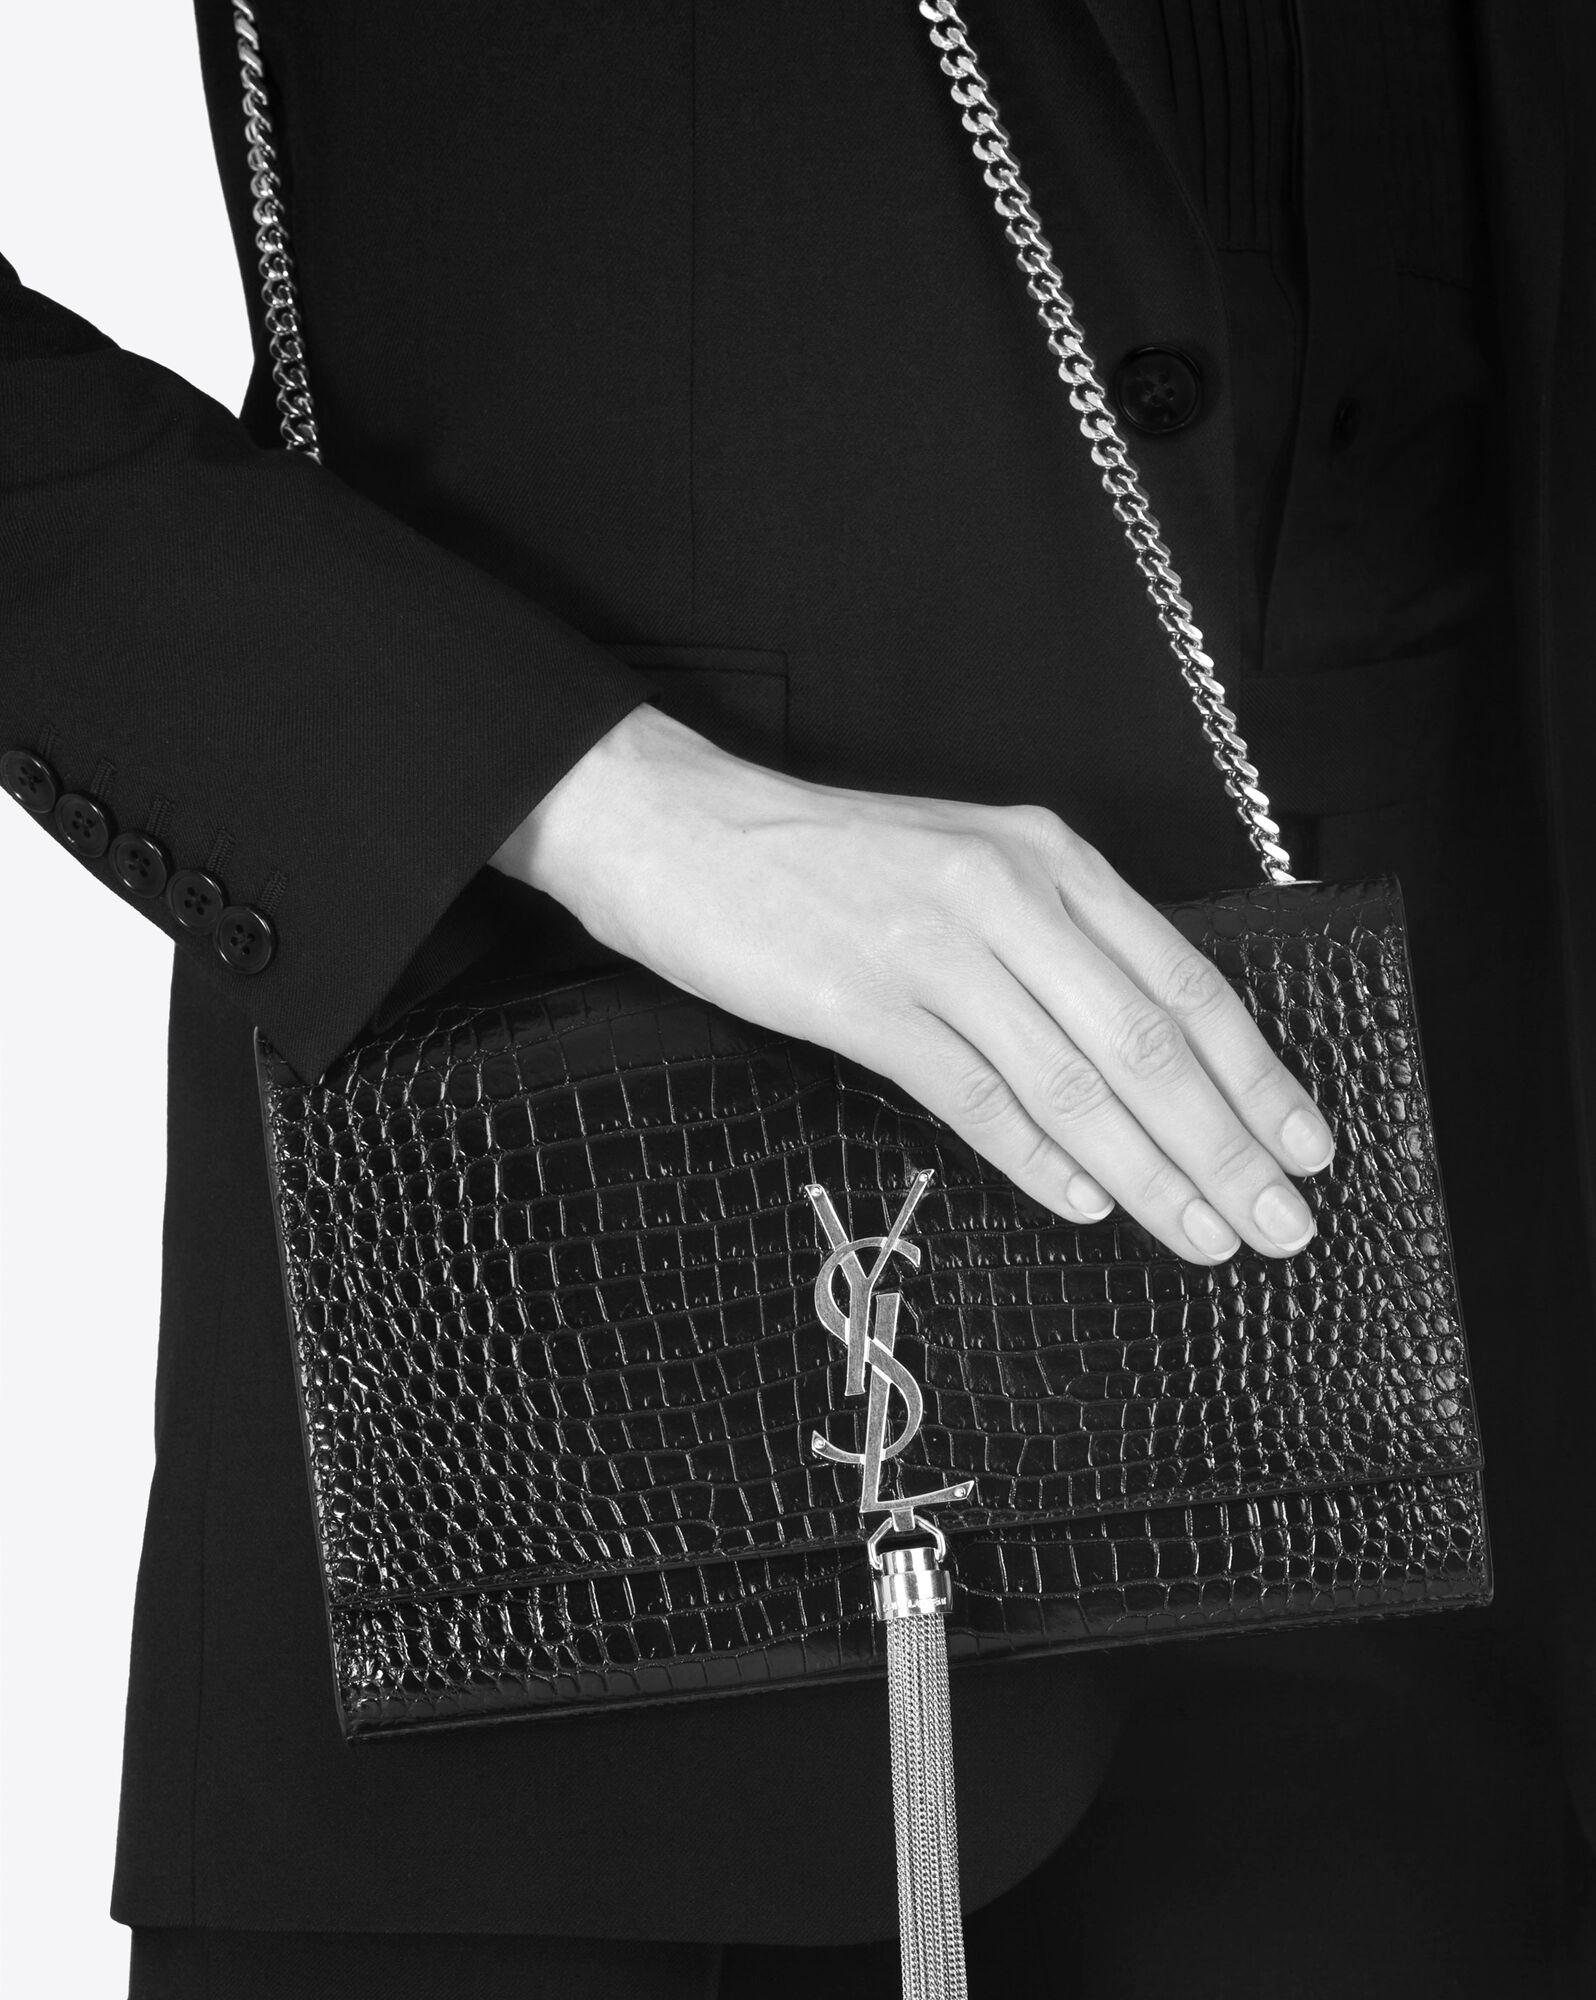 YSL YVES SAINT LAURENT Kate Medium Chain Bag